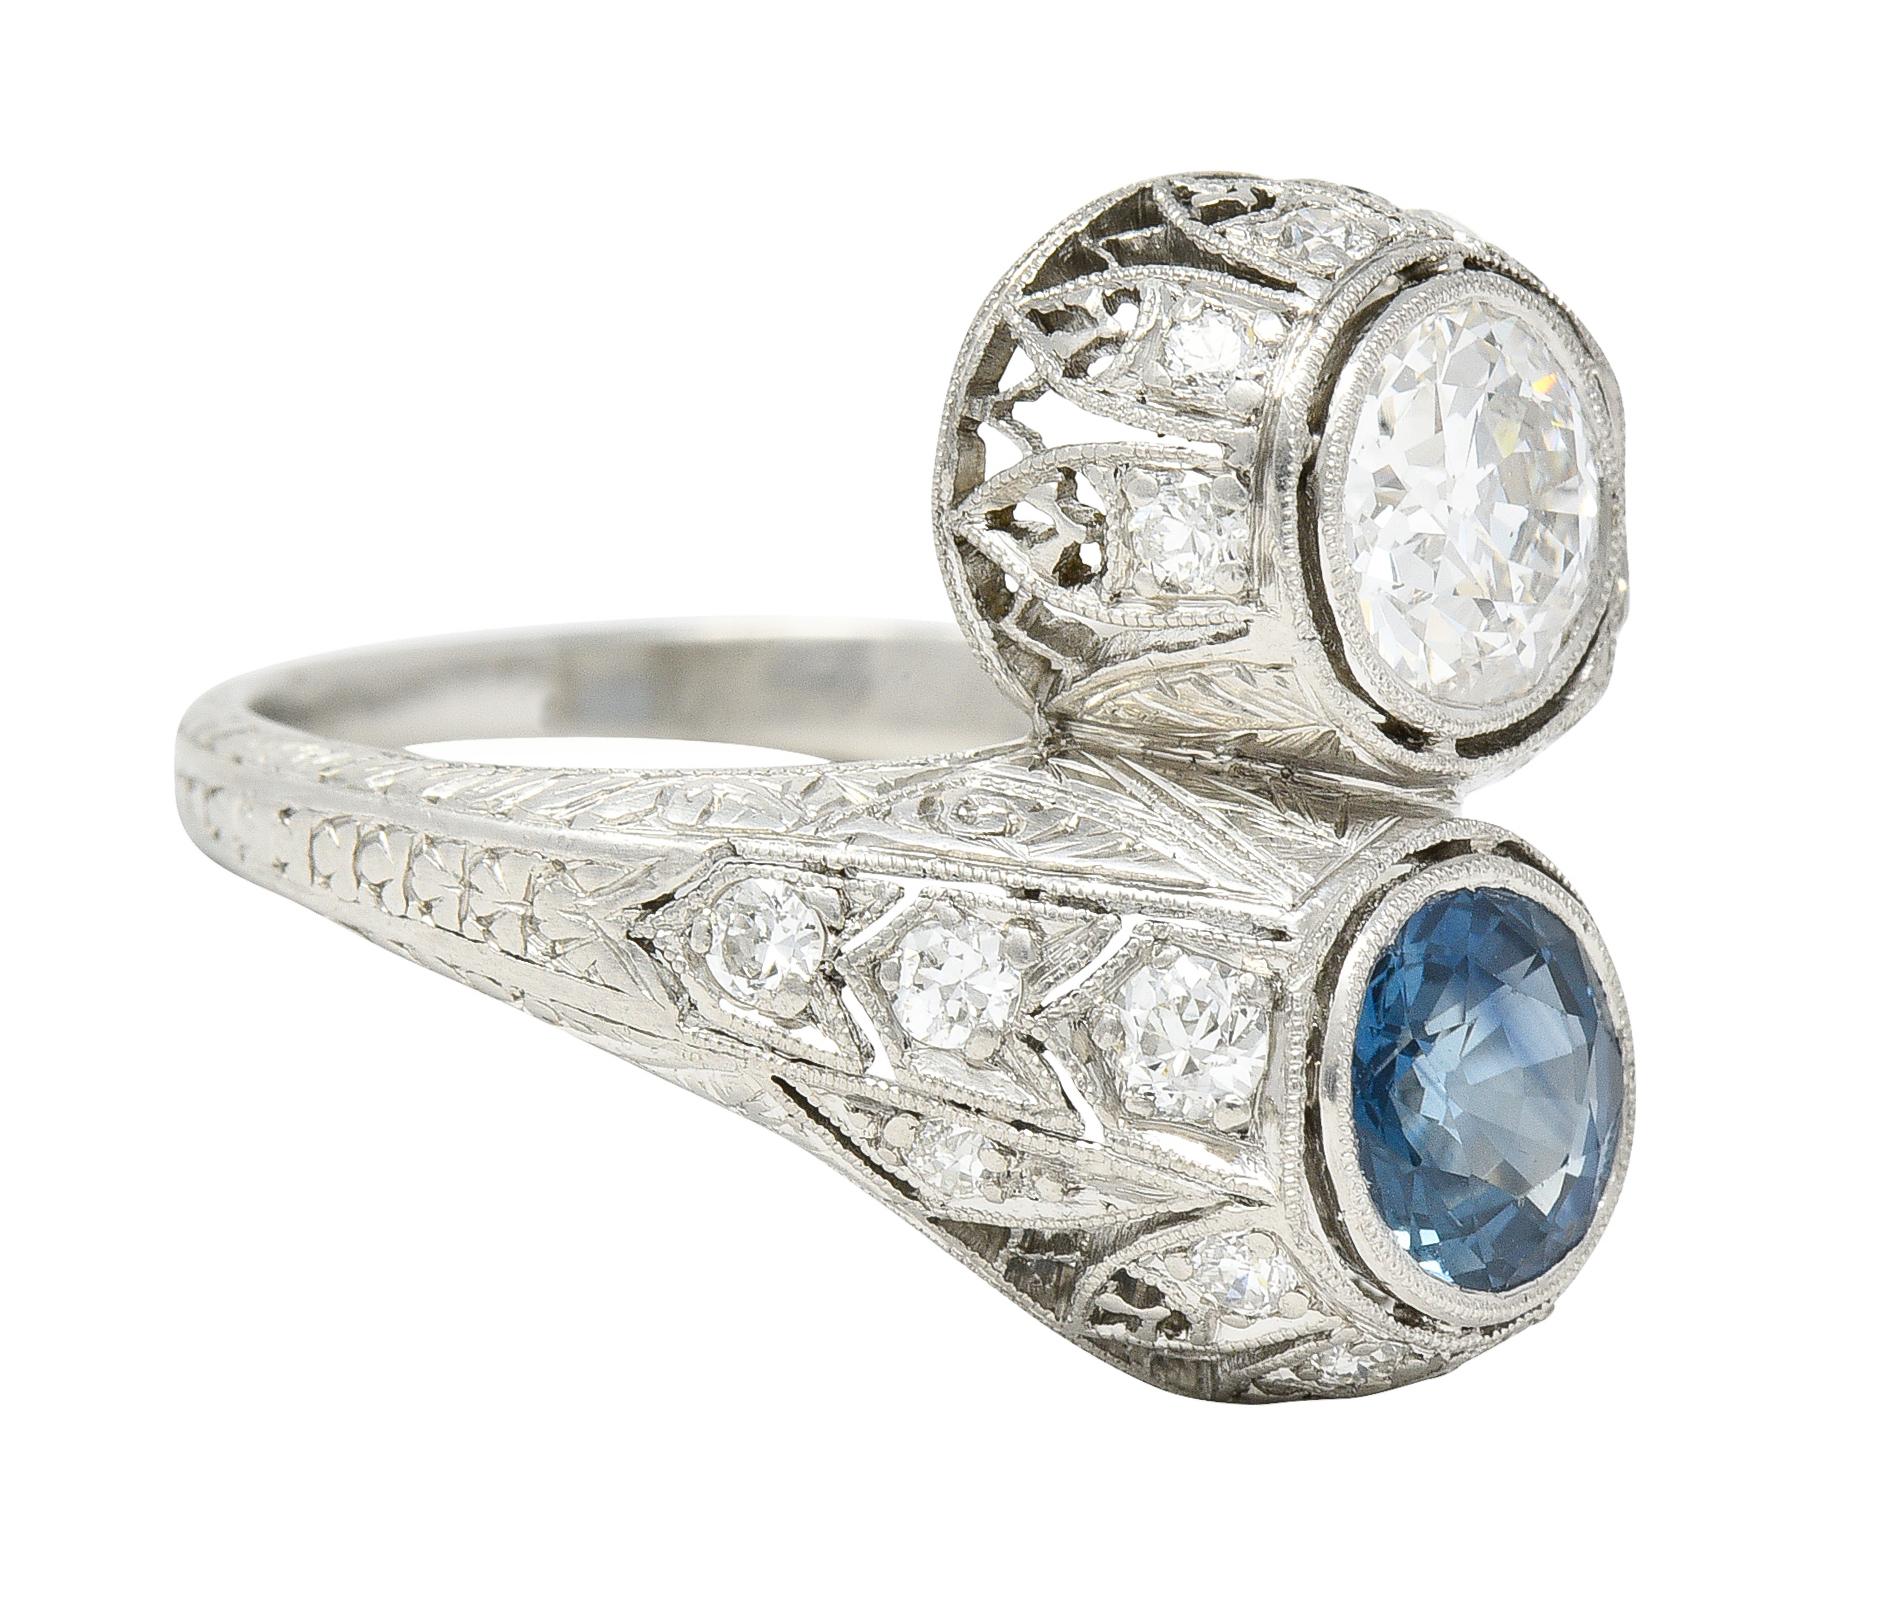 Ring im Bypass-Stil mit einem Diamanten im alten europäischen Schliff und einem Saphir im Rundschliff
Alter europäischer Schliff wiegt etwa 0,91 Karat - Farbe G mit Reinheit SI1
Saphir wiegt etwa 0,97 Karat - transparente hellblaue Farbe
Beide sind